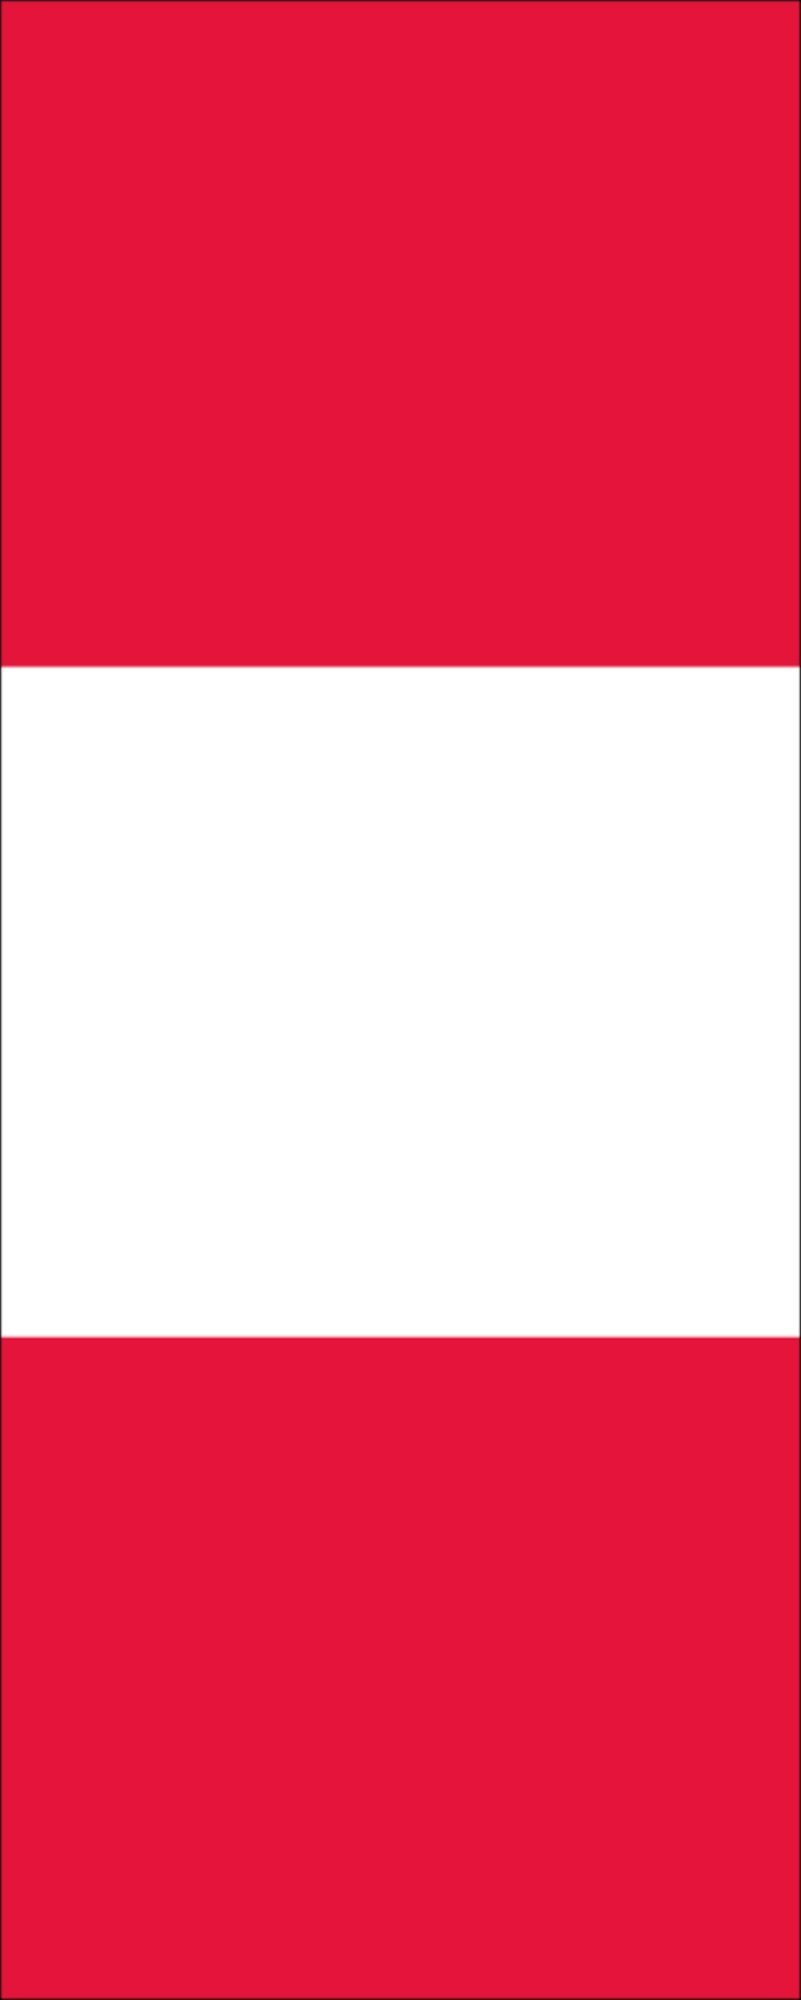 flaggenmeer Flagge Peru 160 Hochformat g/m²